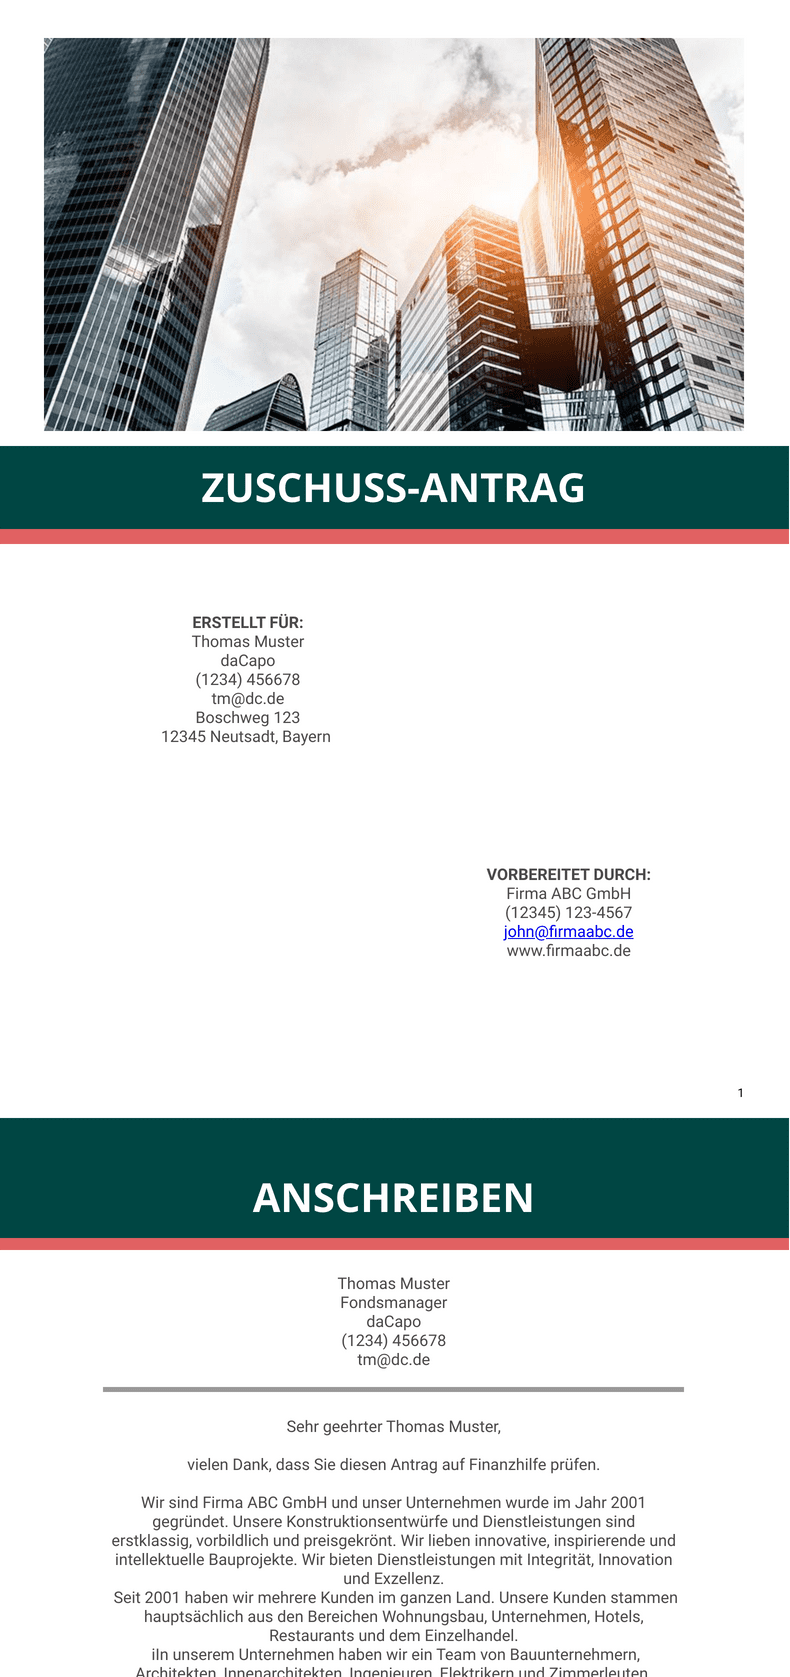 PDF Templates: Zuschuss Antrag